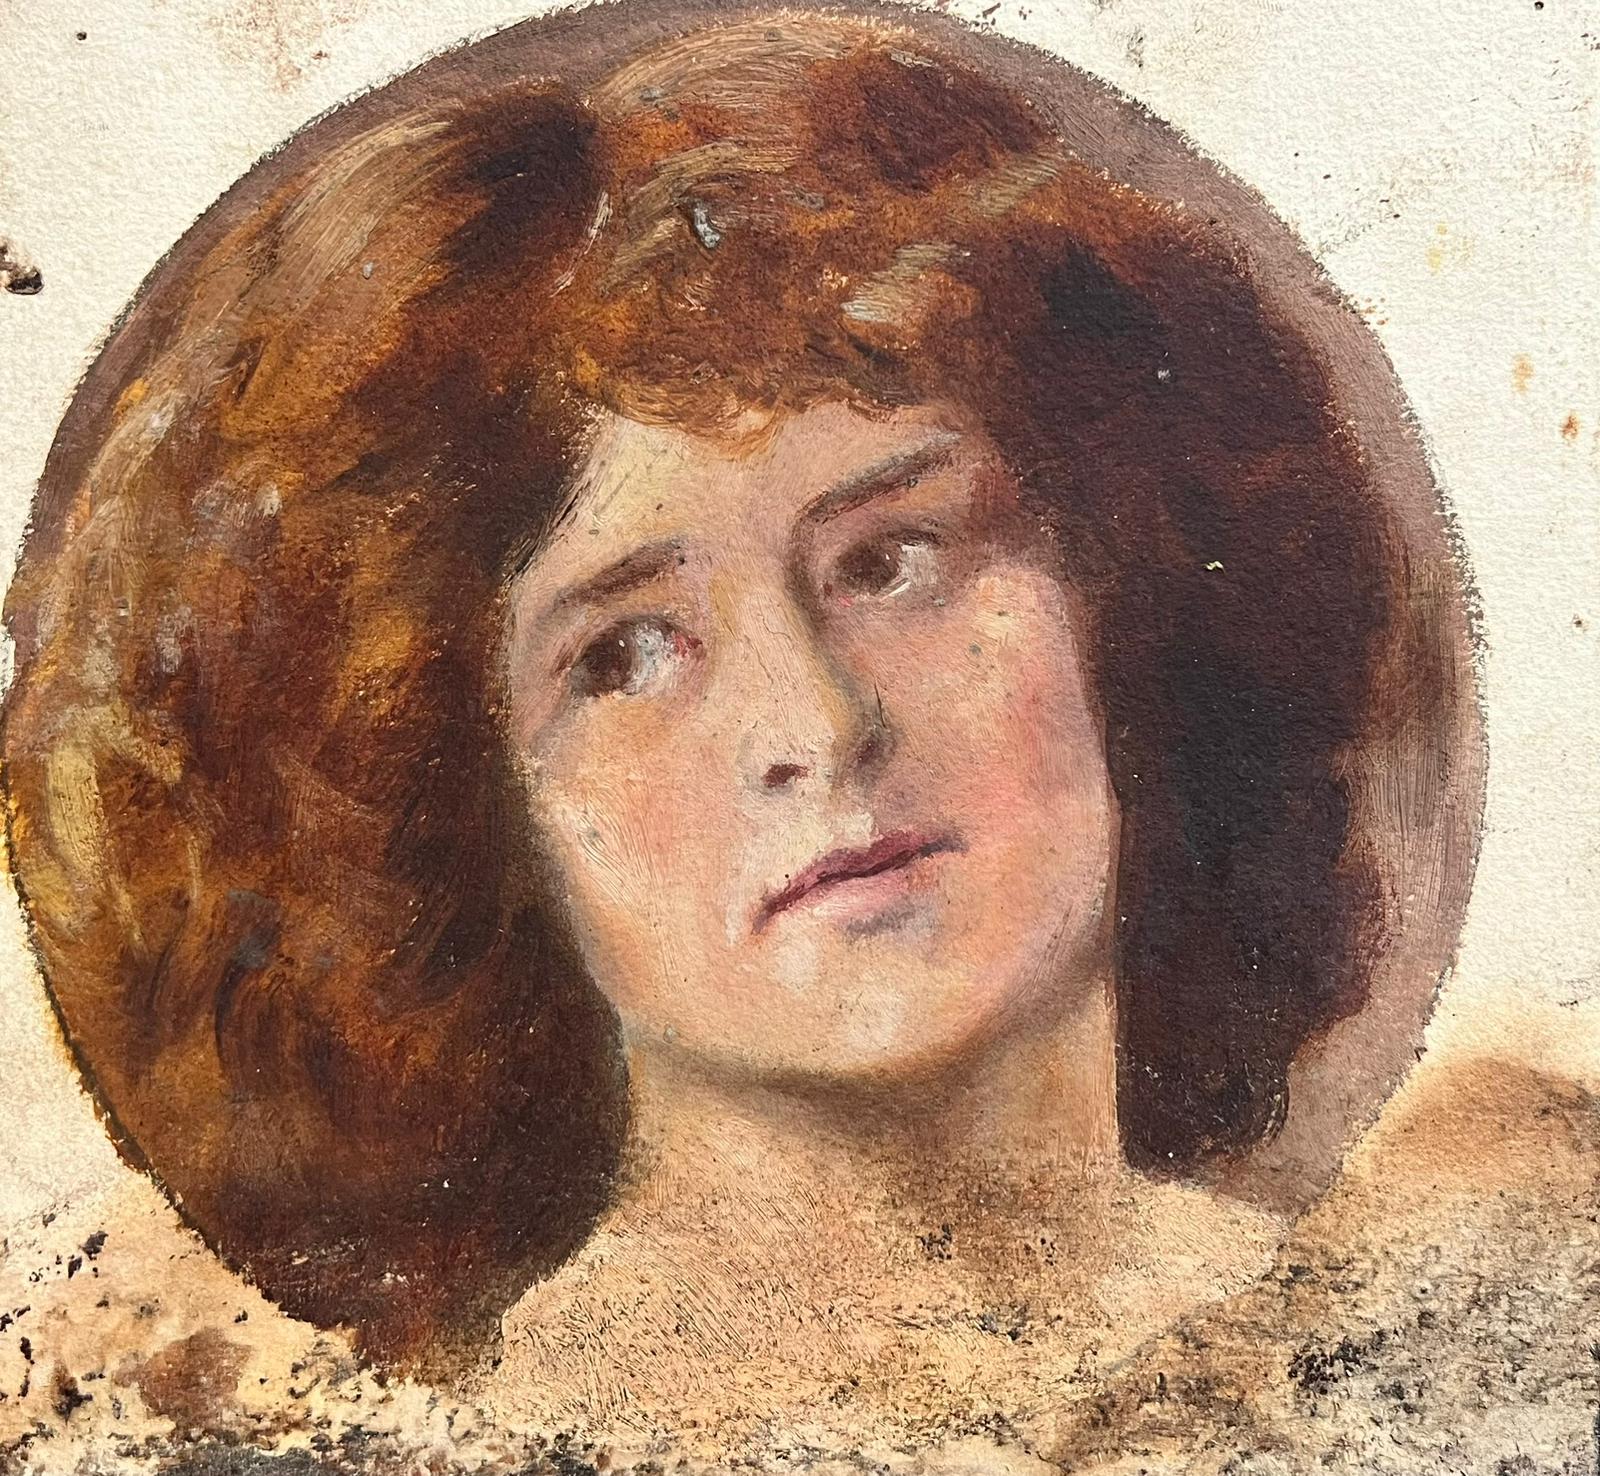 Antikes viktorianisches englisches Ölgemälde einer Dame, gezeichnet – Painting von Antique English 